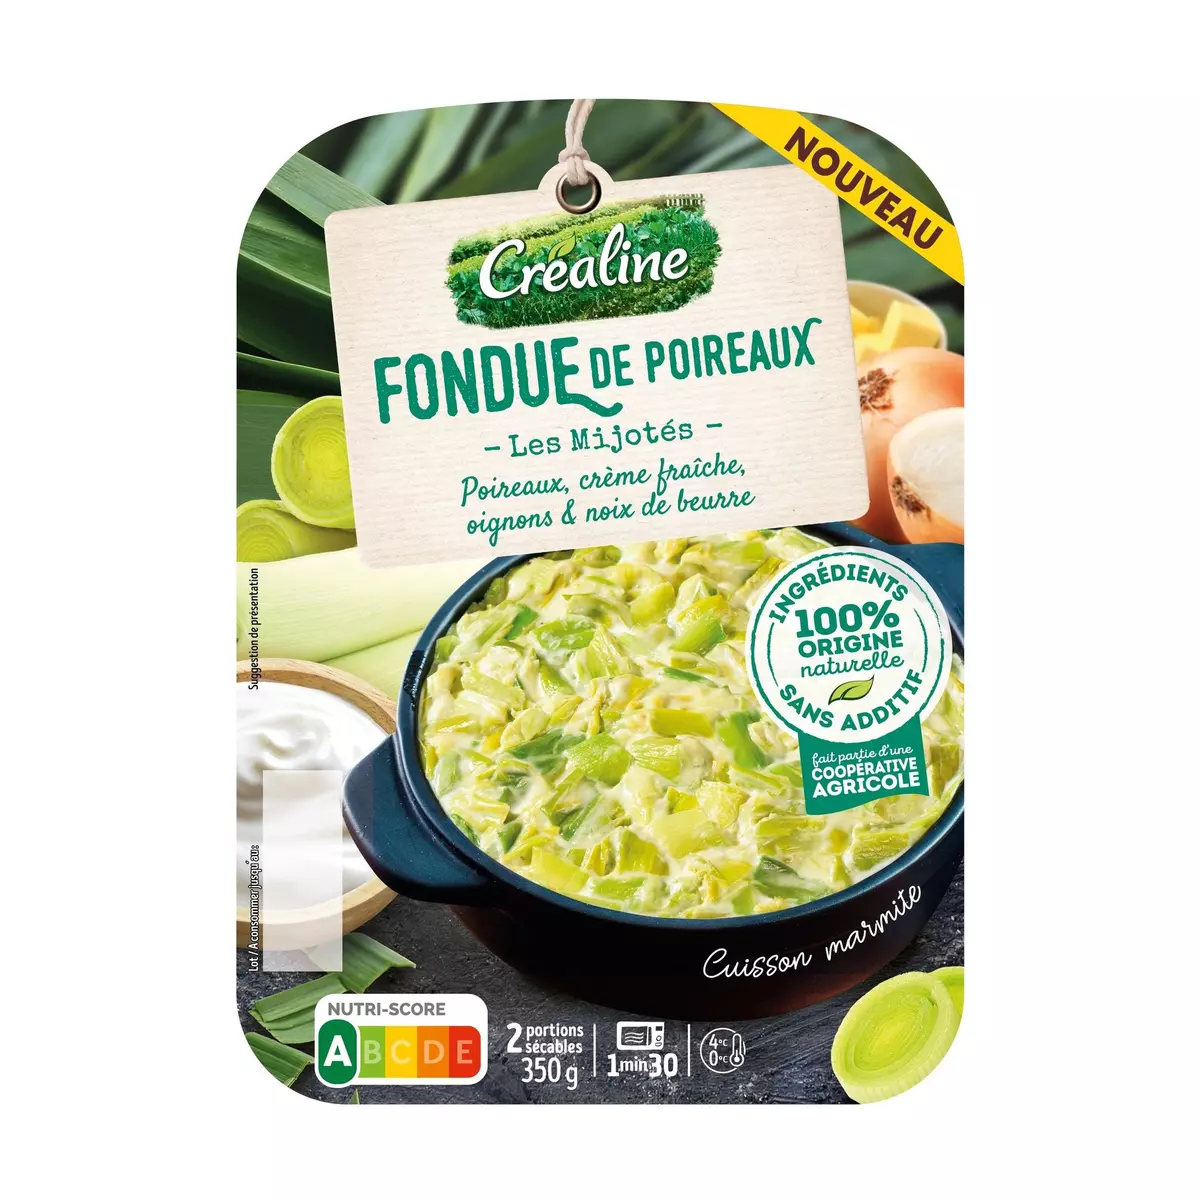 CREALINE Fondue de poireaux 2 portions 2x175g